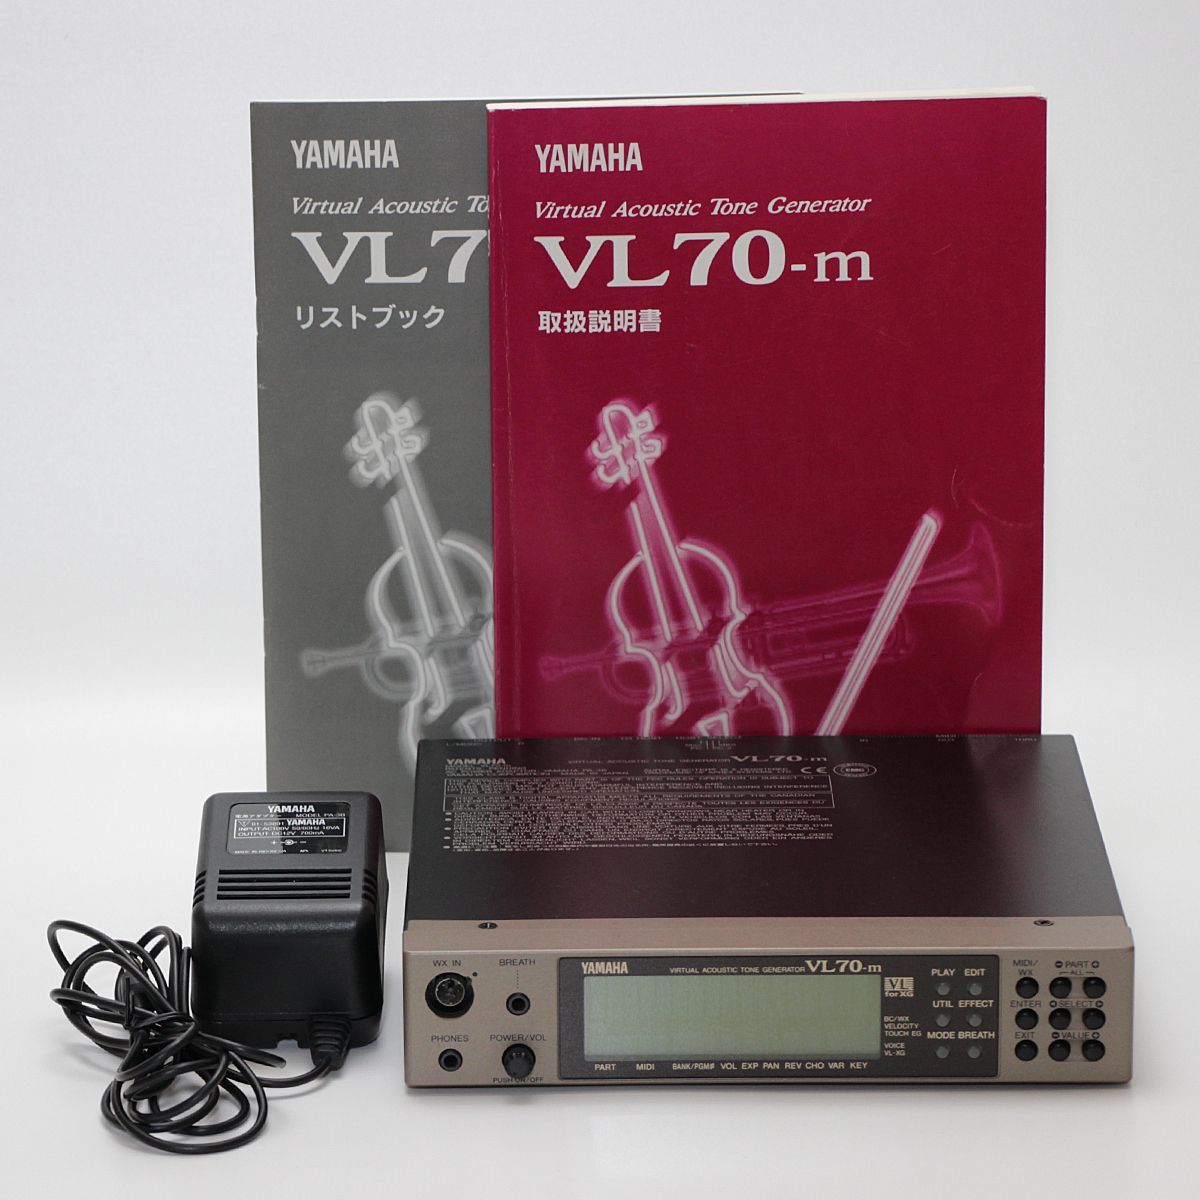 YAMAHA  VL70-m  バーチャルアコースティック音源